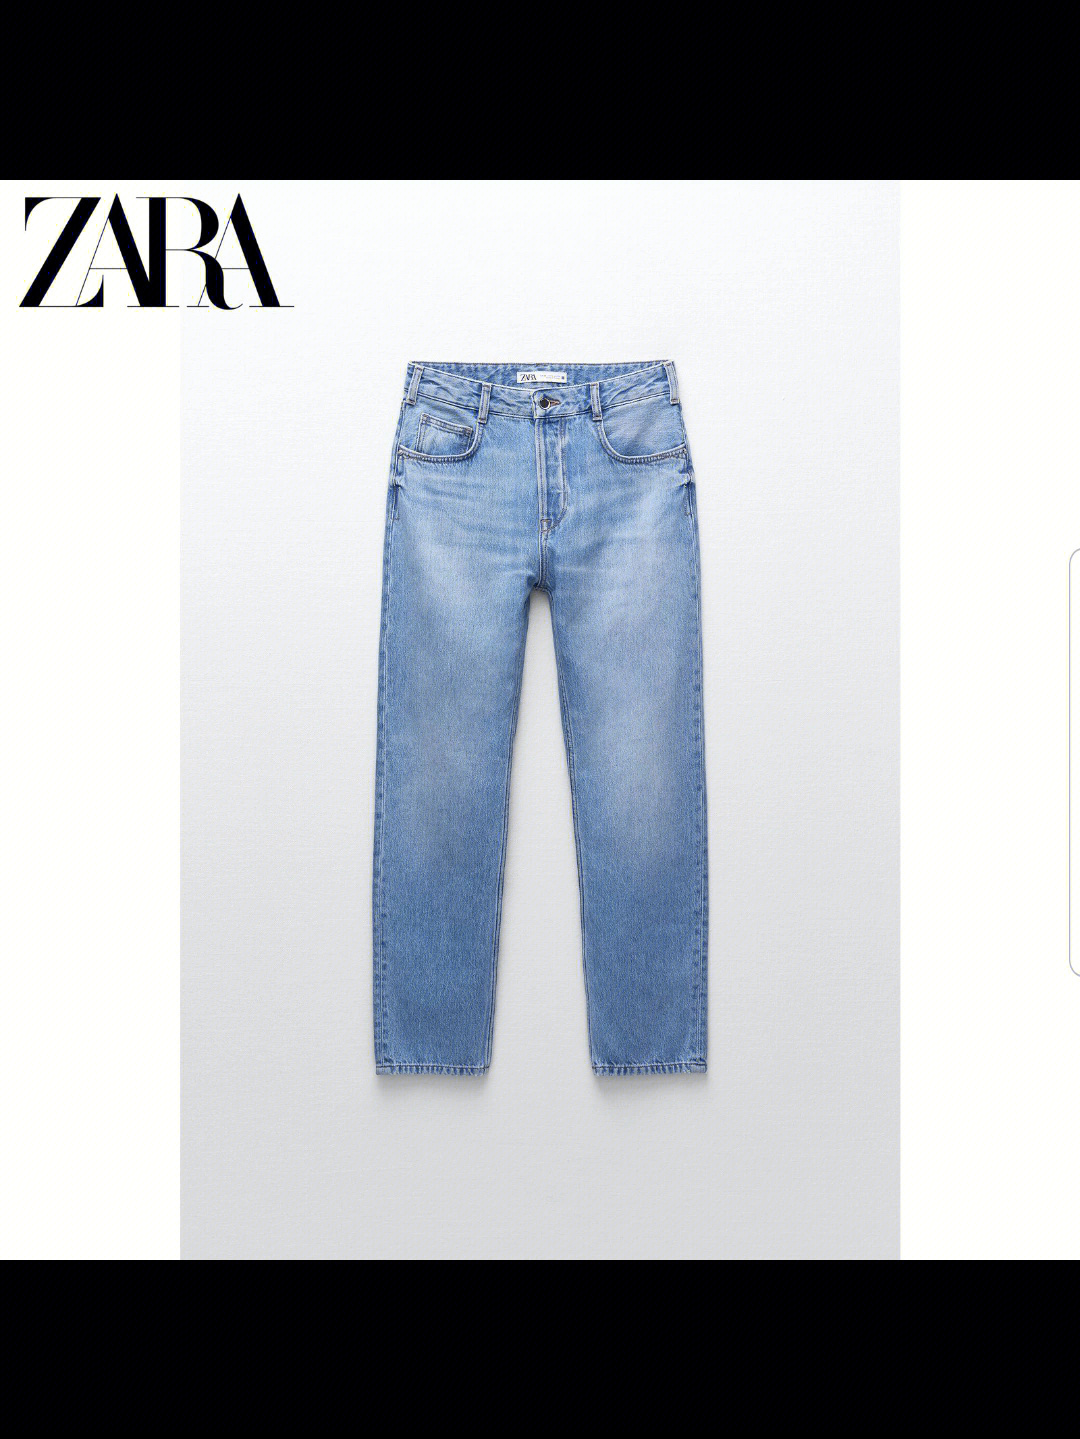 zara牛仔裤尺码对照表图片